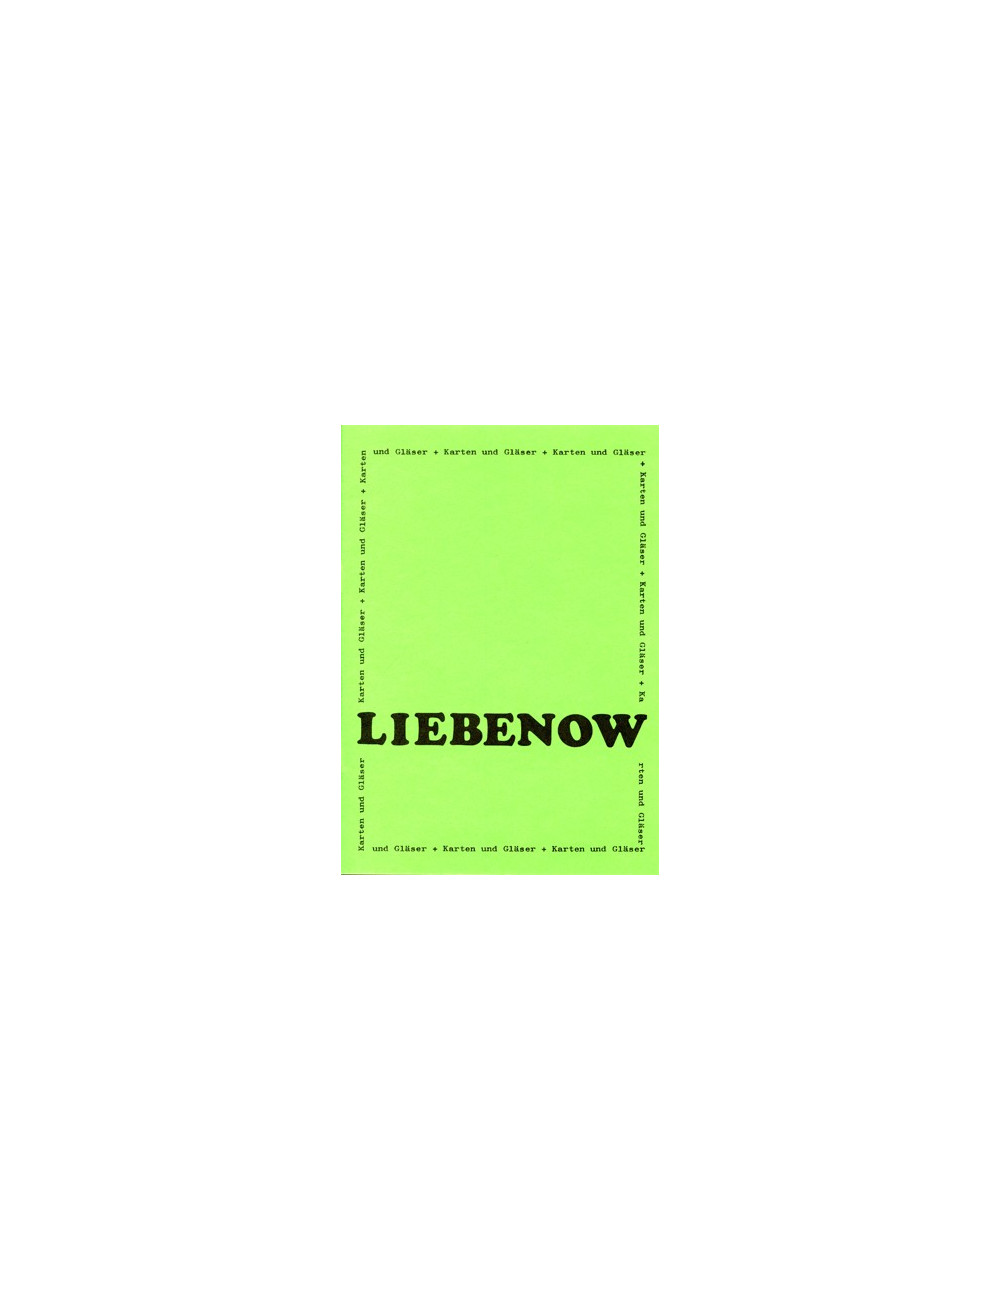 LIEBENOW – KARTEN UND GLÄSER (LIEBENOW Erard)